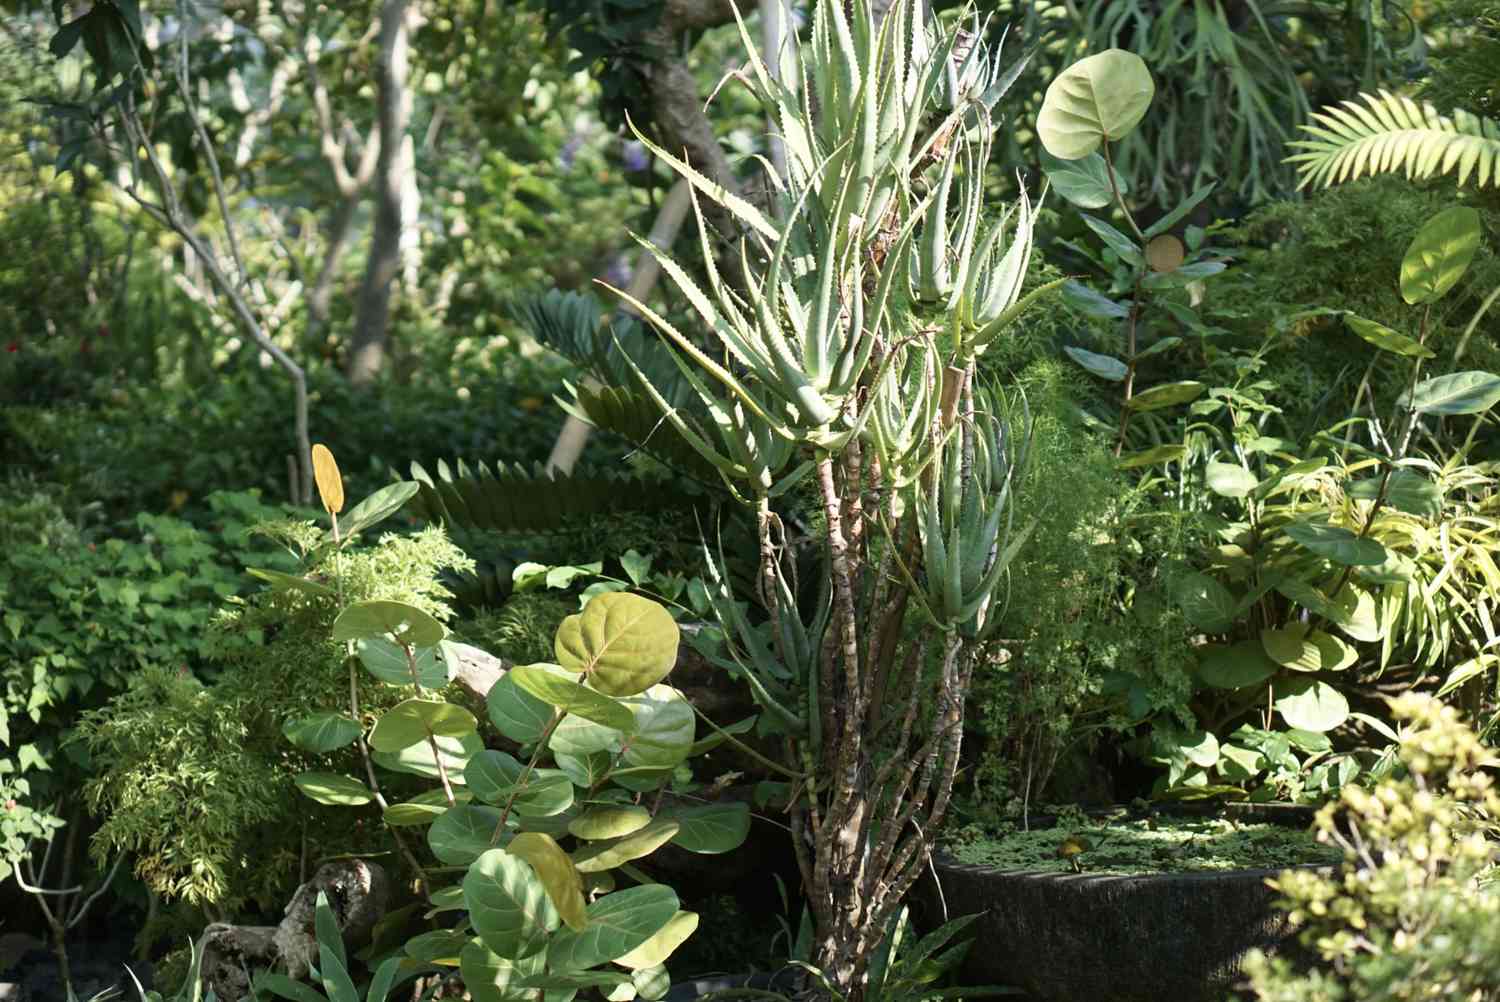 Aloe-Kletterpflanze auf hohen, dünnen Stängeln, die mit stacheligen Blättern zusammengewachsen sind